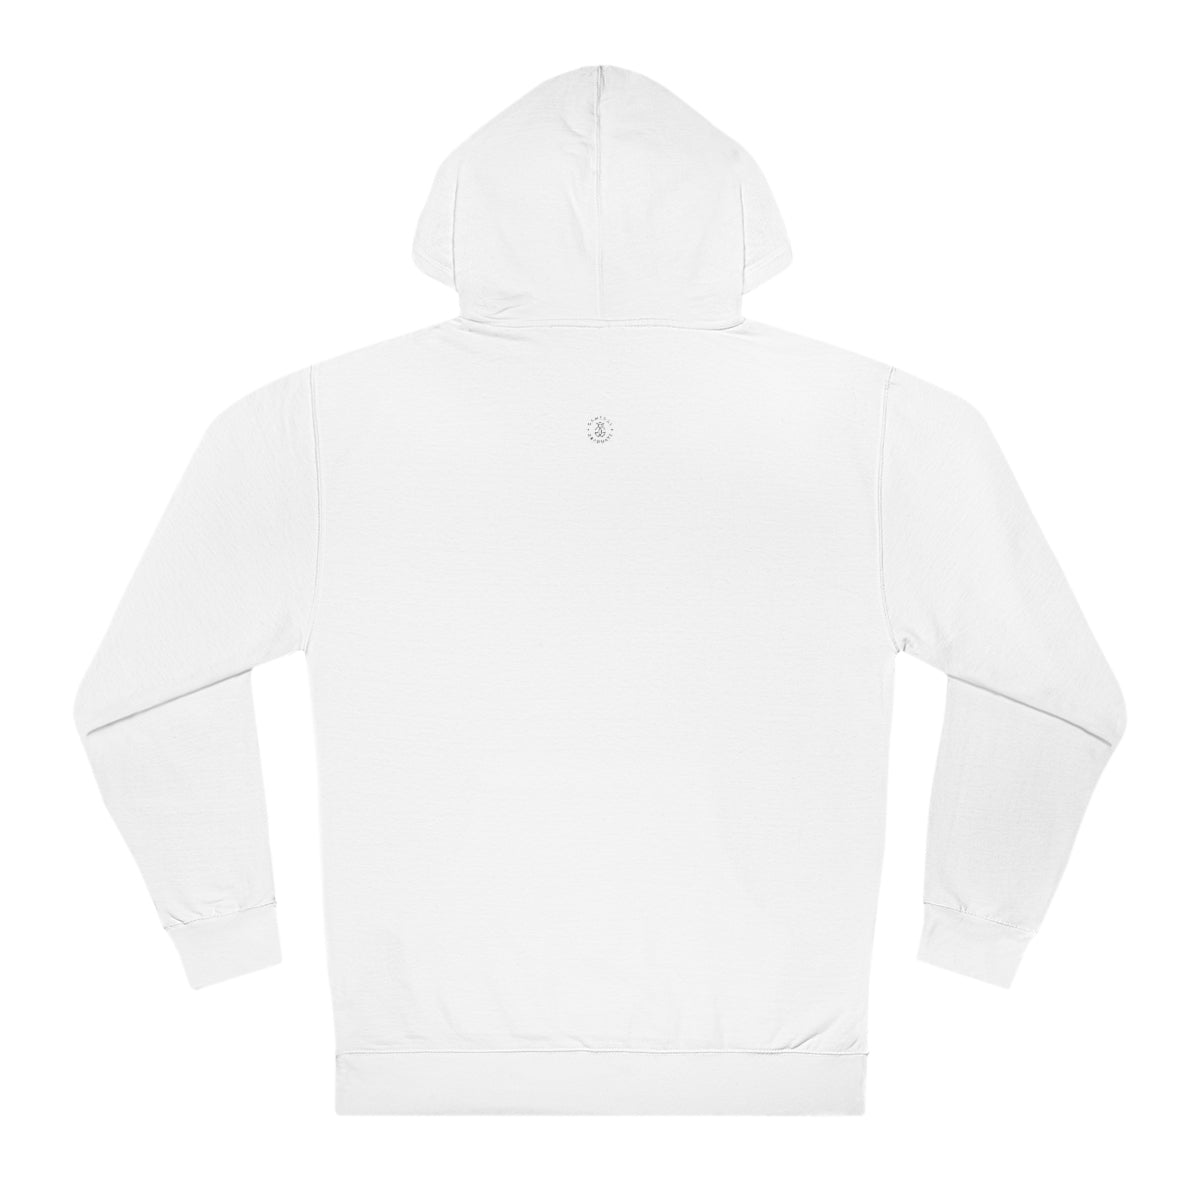 Nebraska Hooded Sweatshirt - GG - ITC